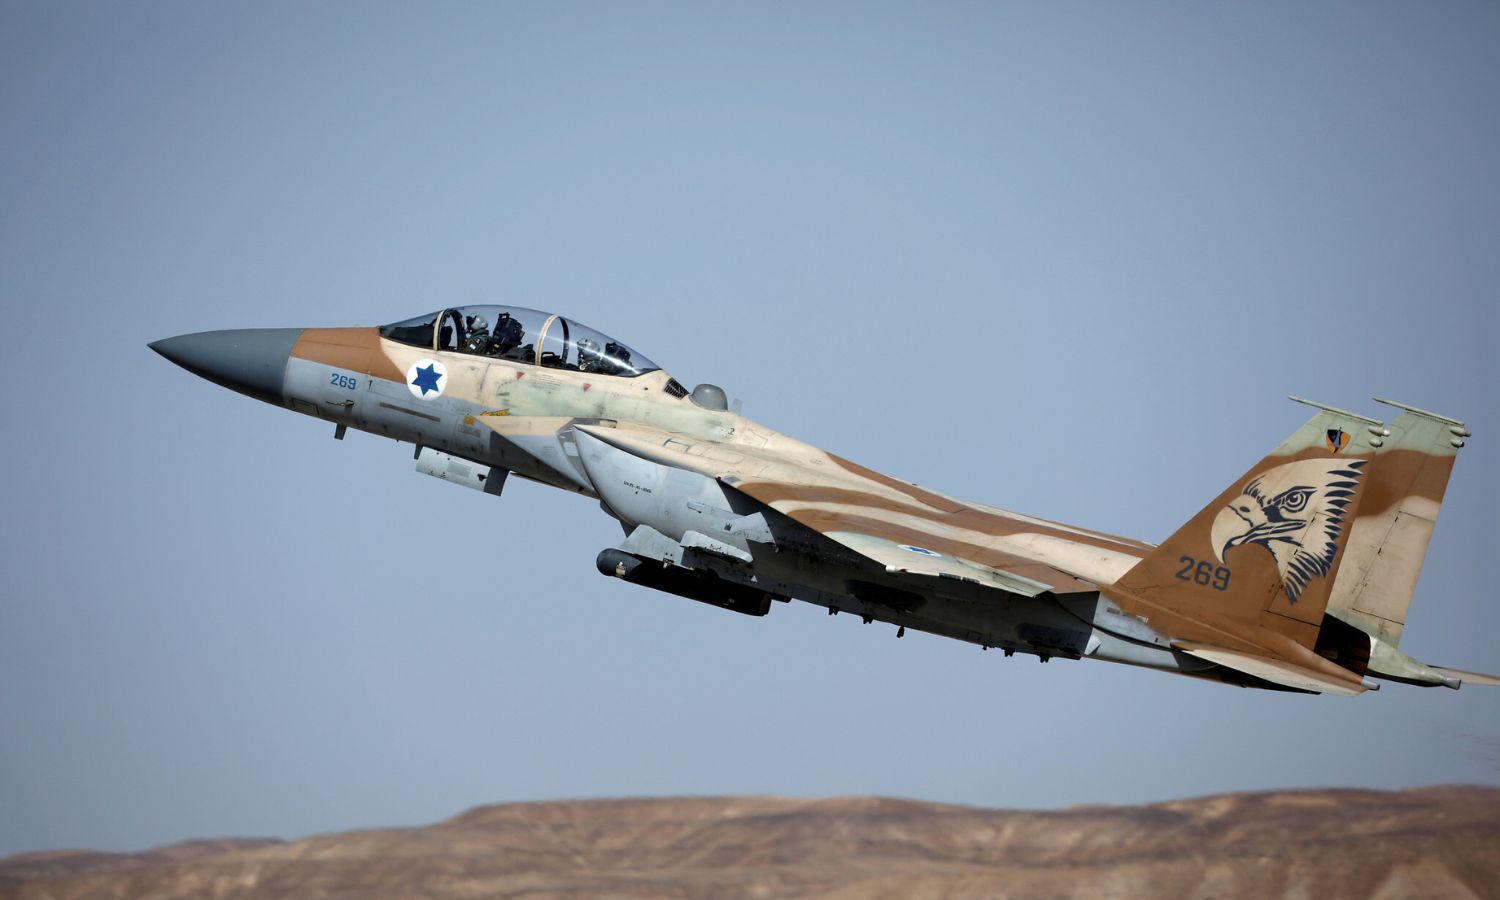 طائرة مقاتلة إسرائيلية من طراز F-15 تقلع خلال تمرين بين طواقم من القوات الجوية الأمريكية والإسرائيلية في قاعدة "عوفدا"- 16 من أيار 2017 (رويترز / أمير كوهين)